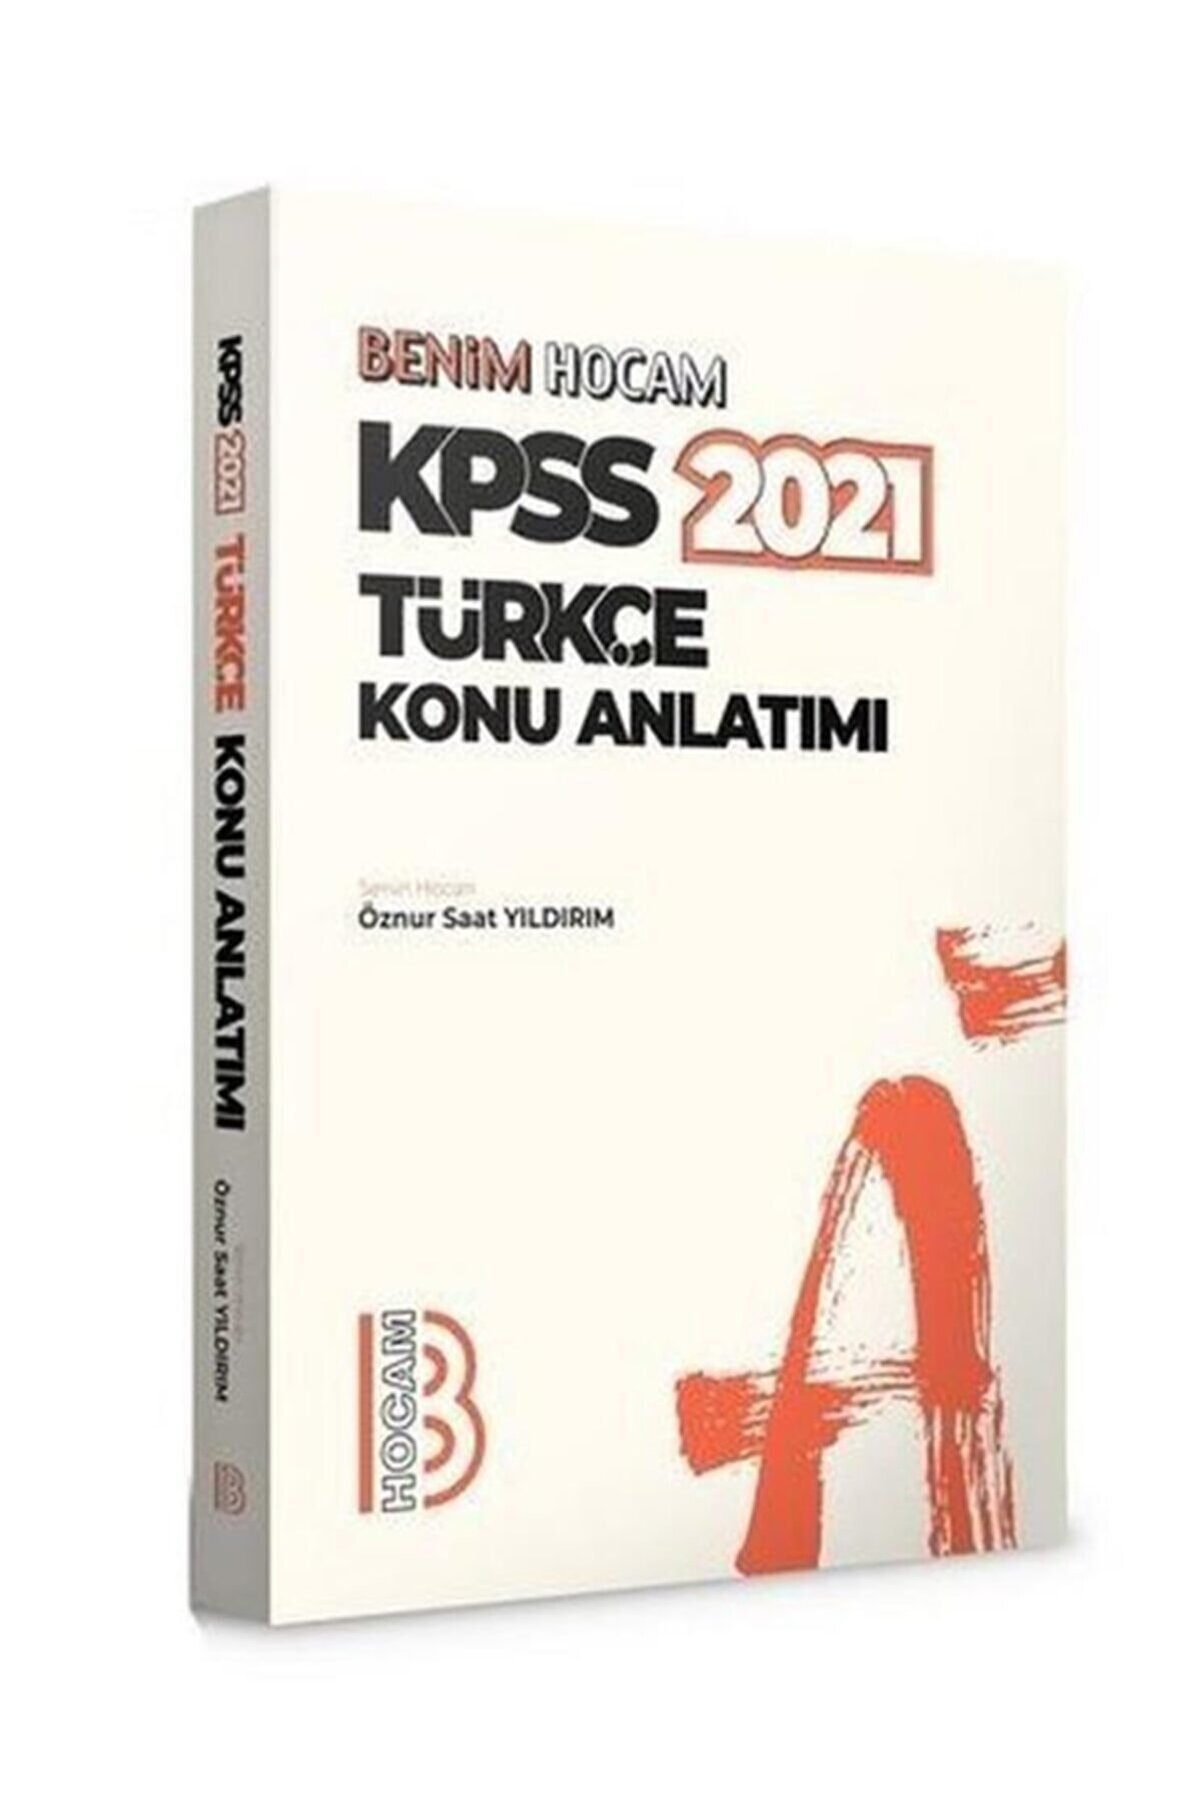 Benim Hocam Yayınları 2021 Kpss Türkçe Konu Anlatımı Öznur Saat Yıldırım